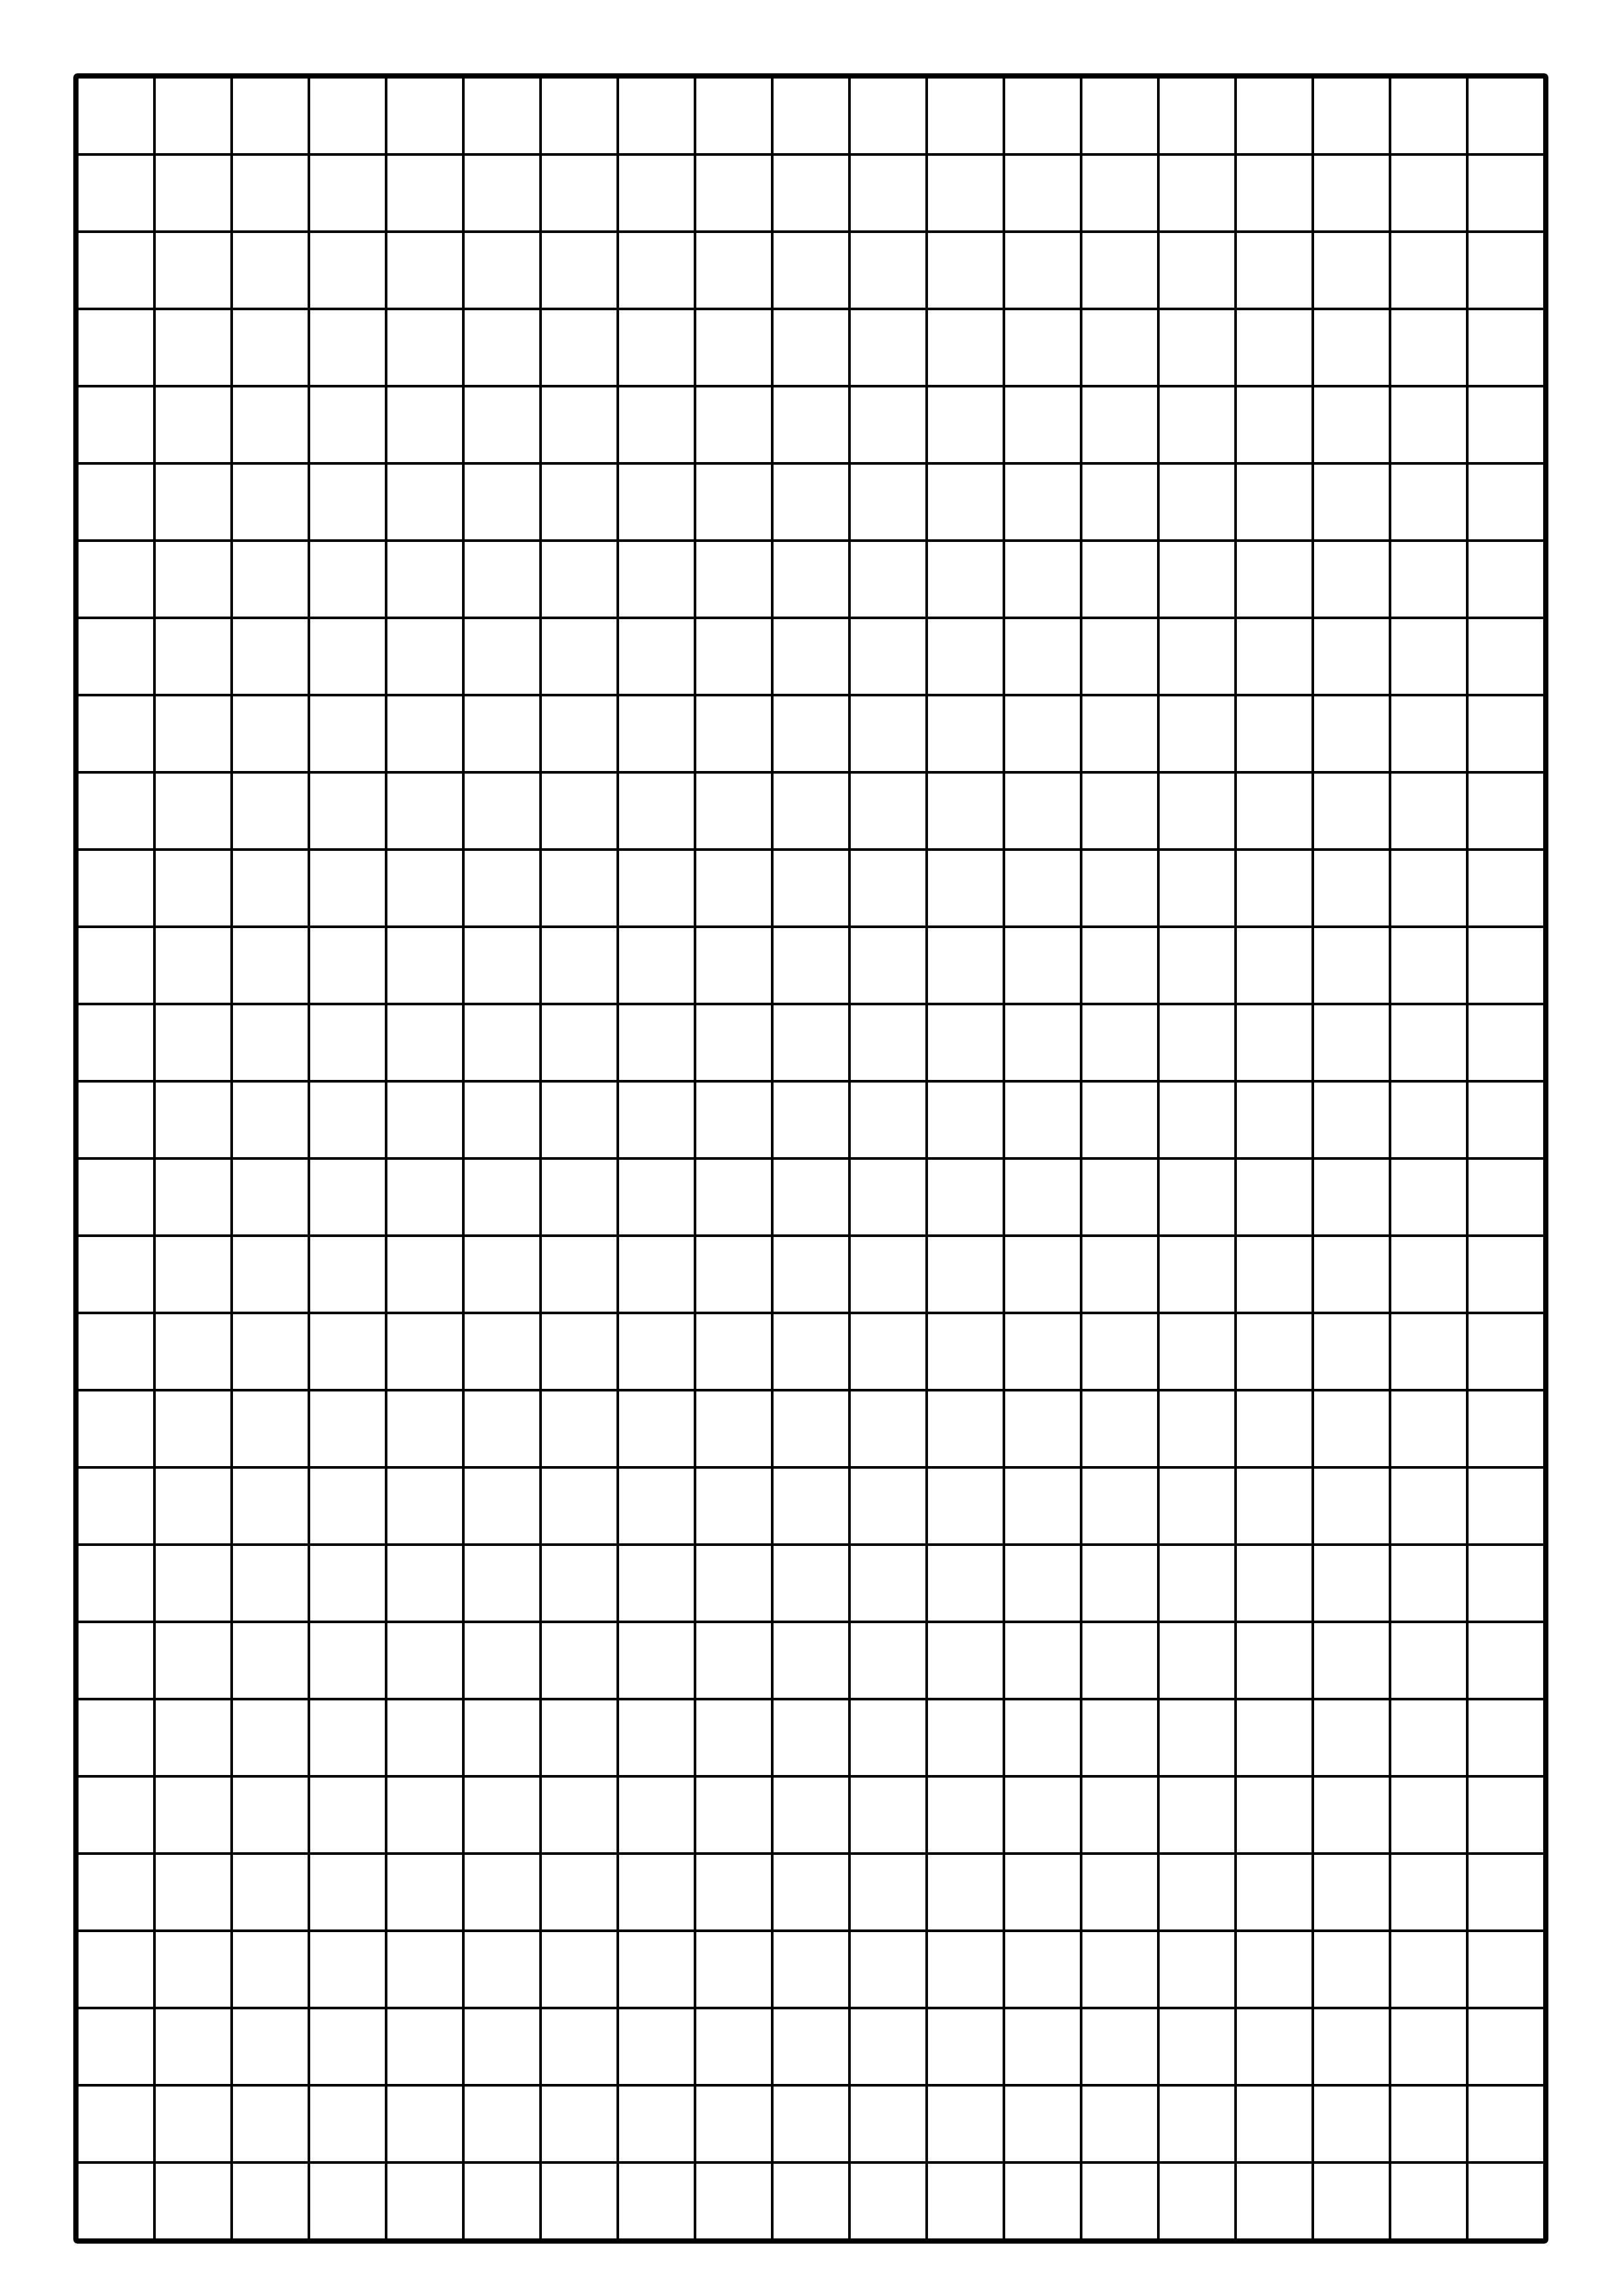 Graph Paper 1 Cm Squares Templates At Allbusinesstemplates